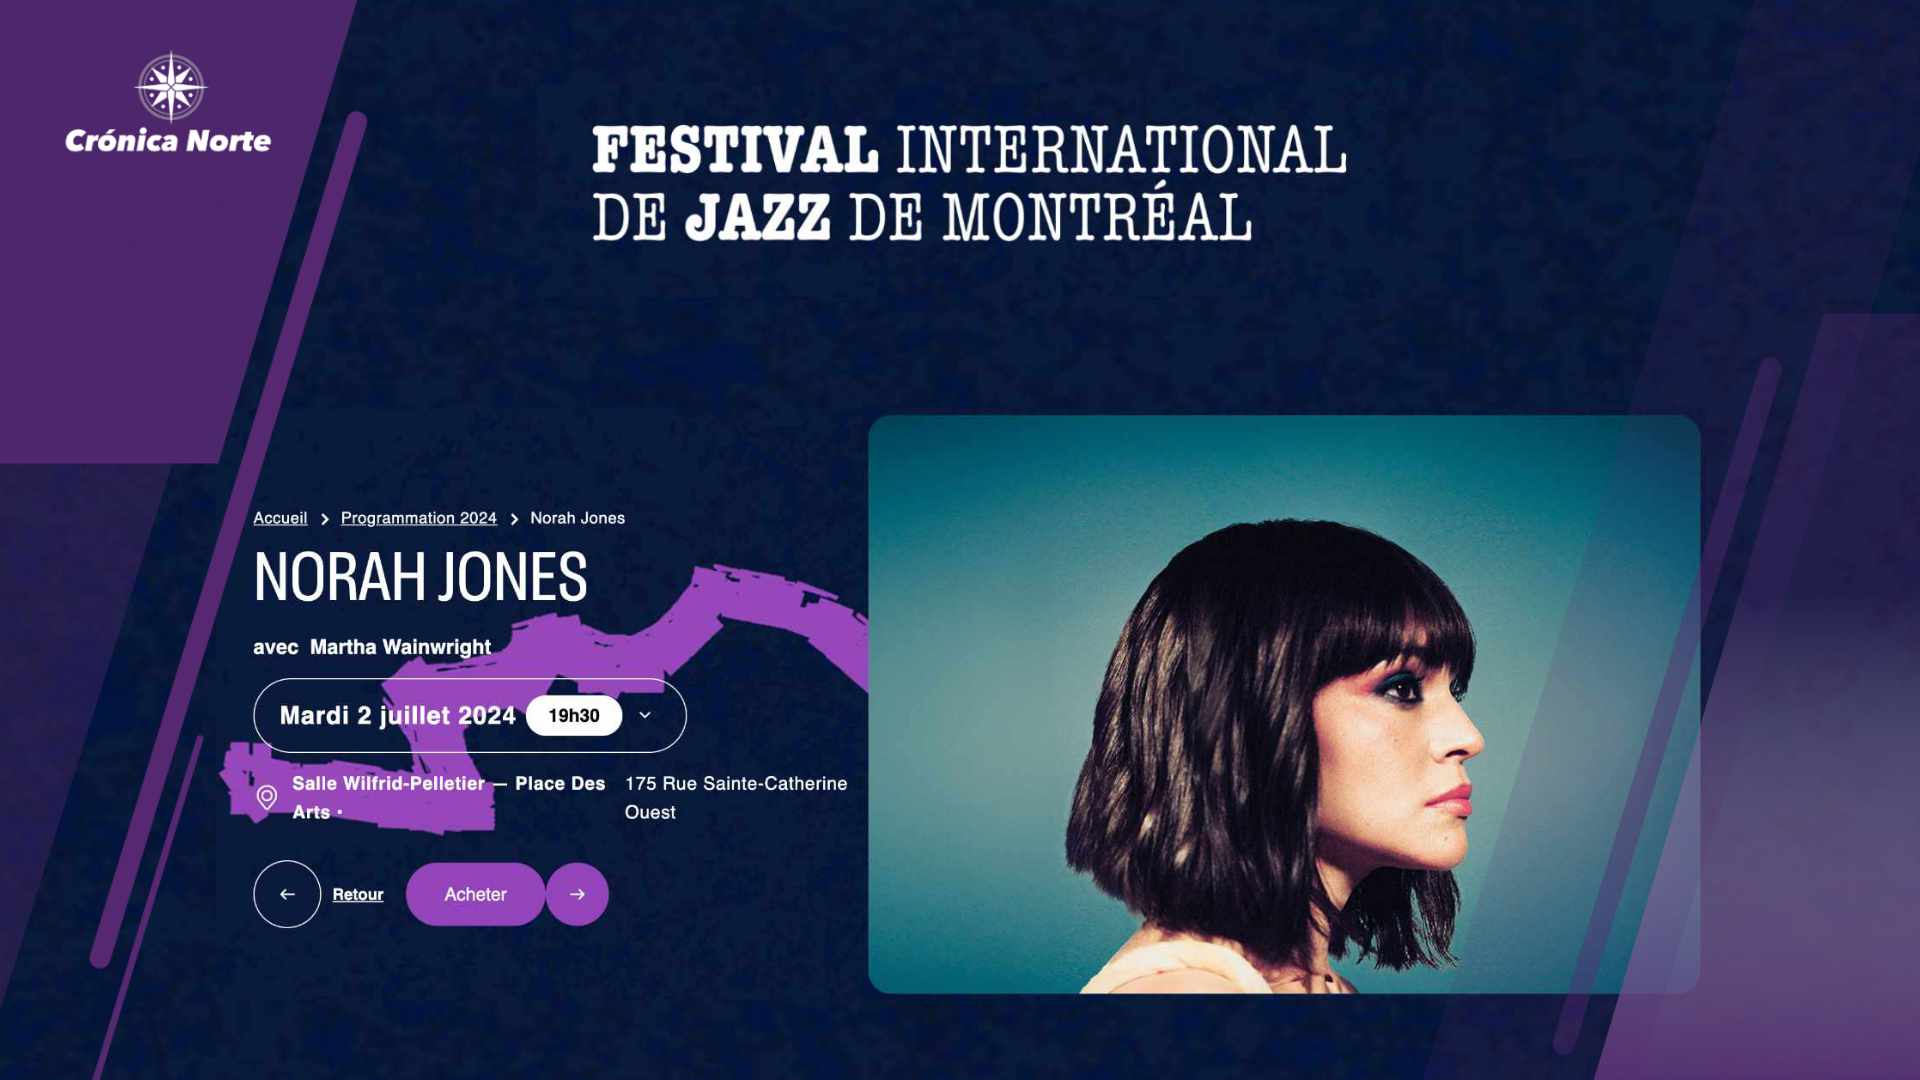 La extraordinaria Norah Jones encabezará el Festival de Jazz